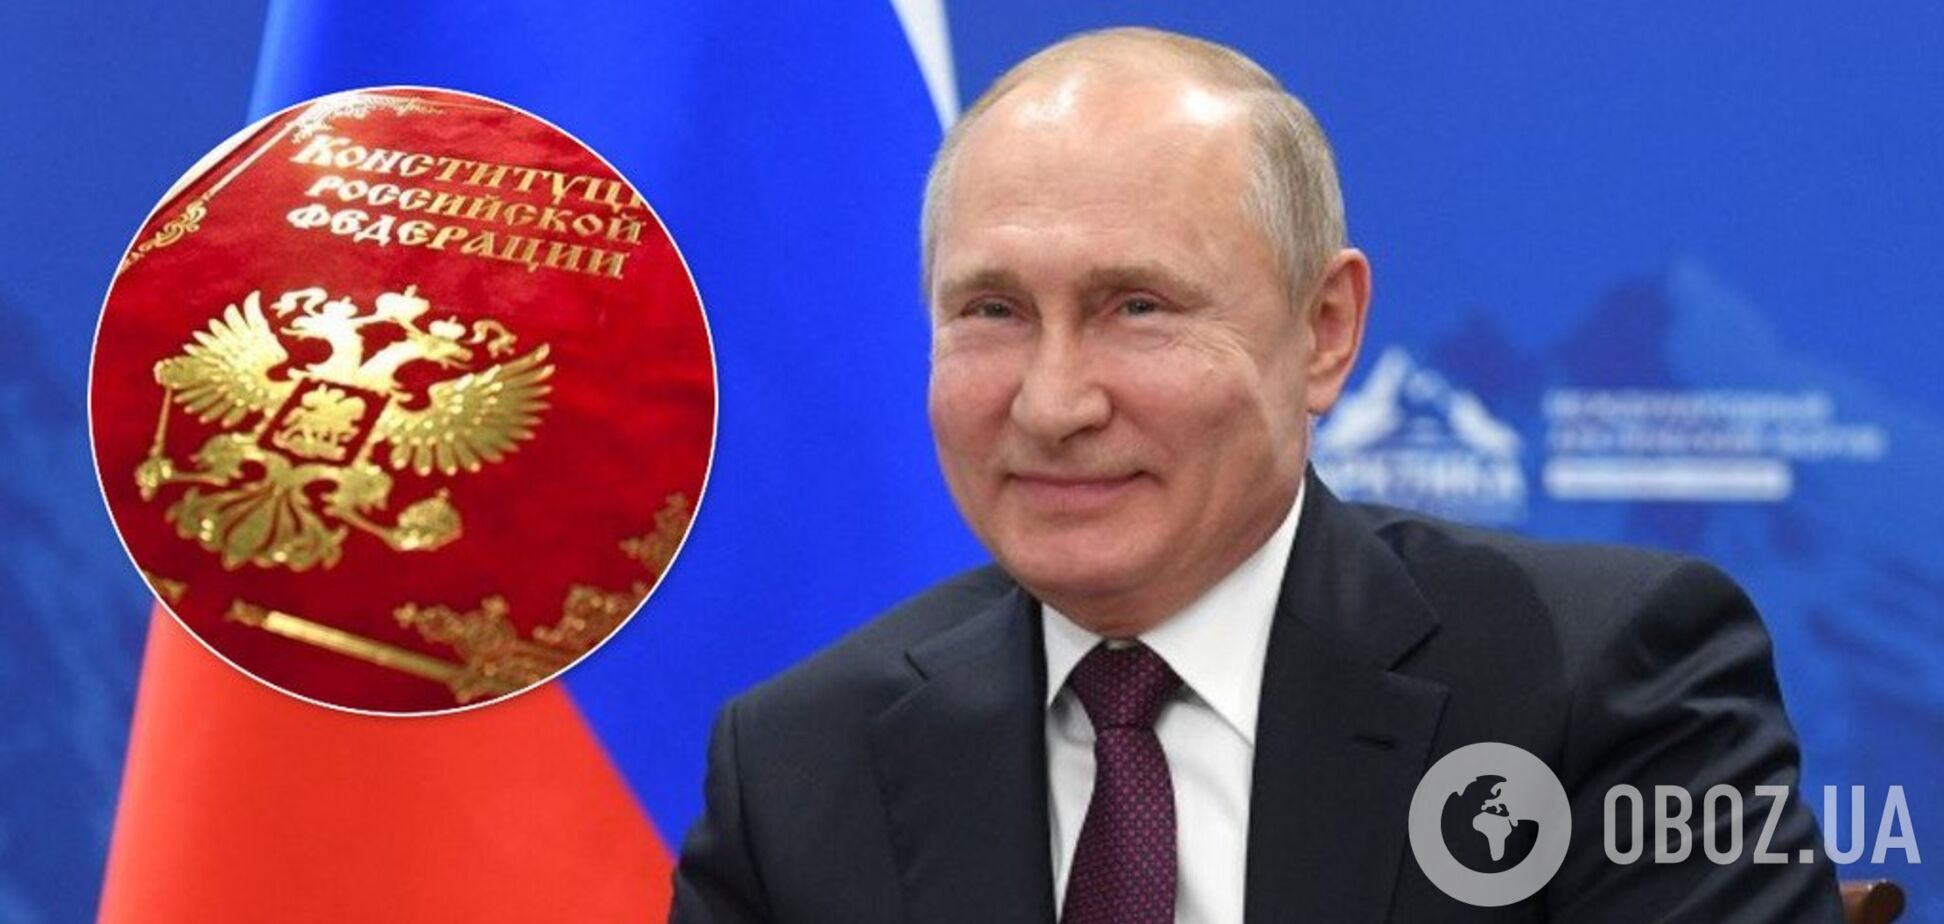 У Росії пропонують замінити президента 'верховним правителем': подробиці